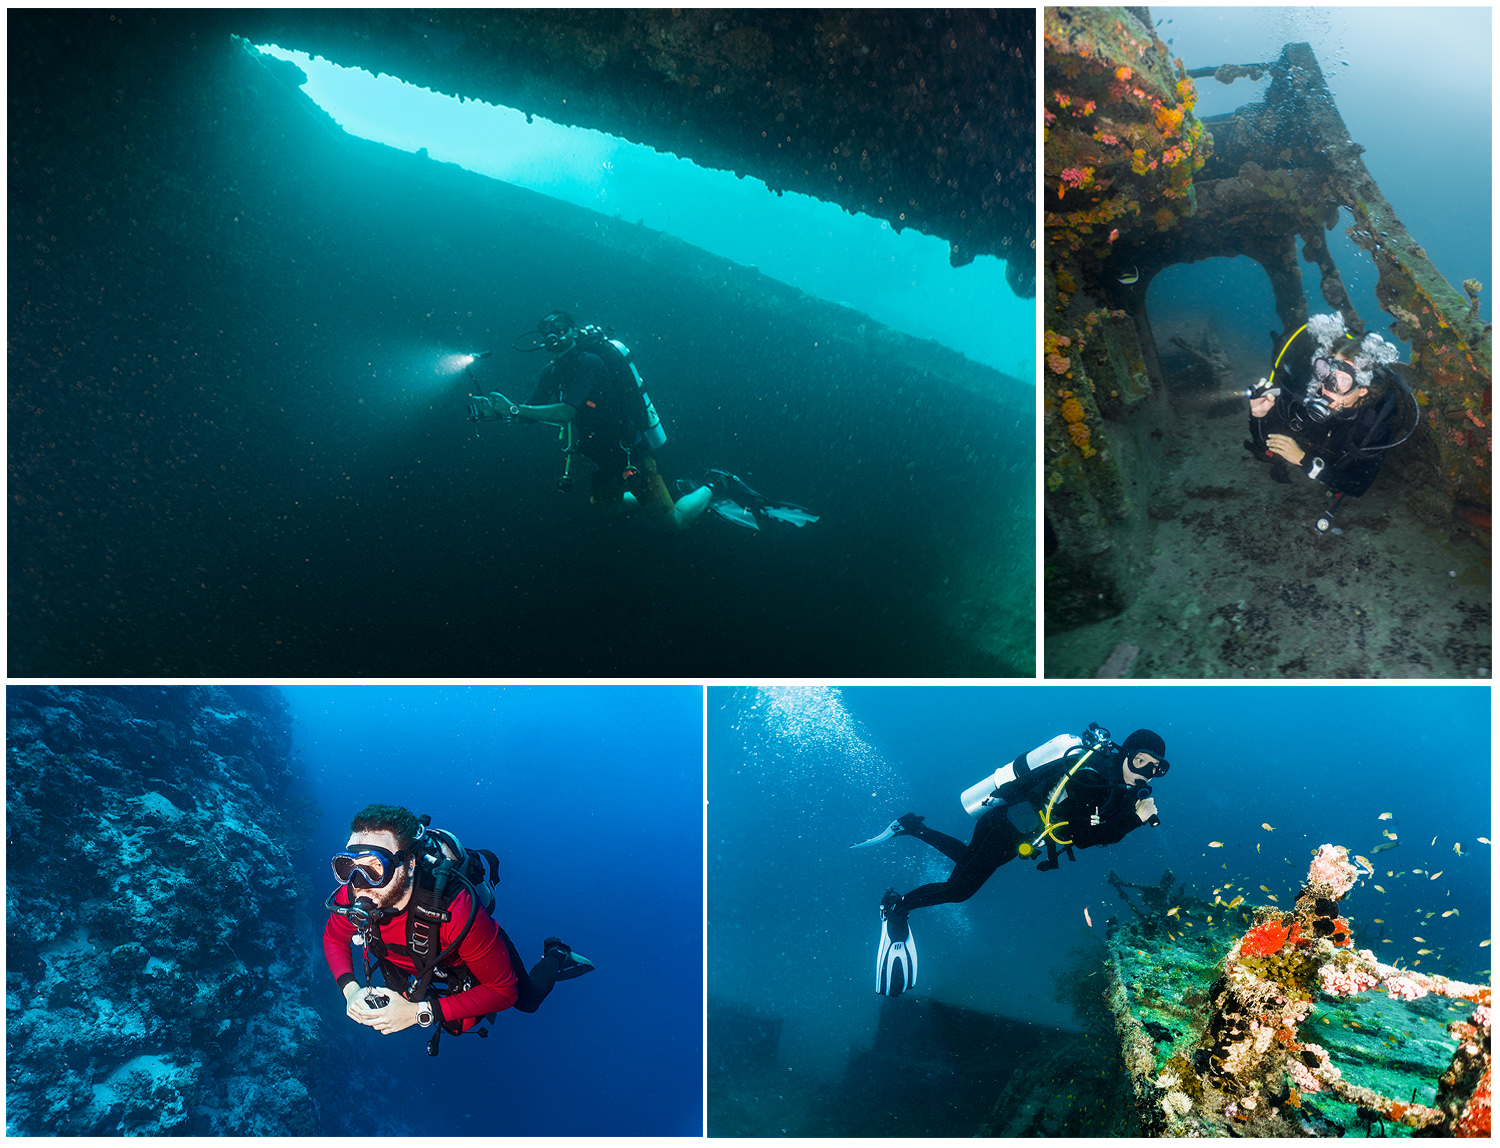 II. Understanding the Unique Challenges of Underwater Photography